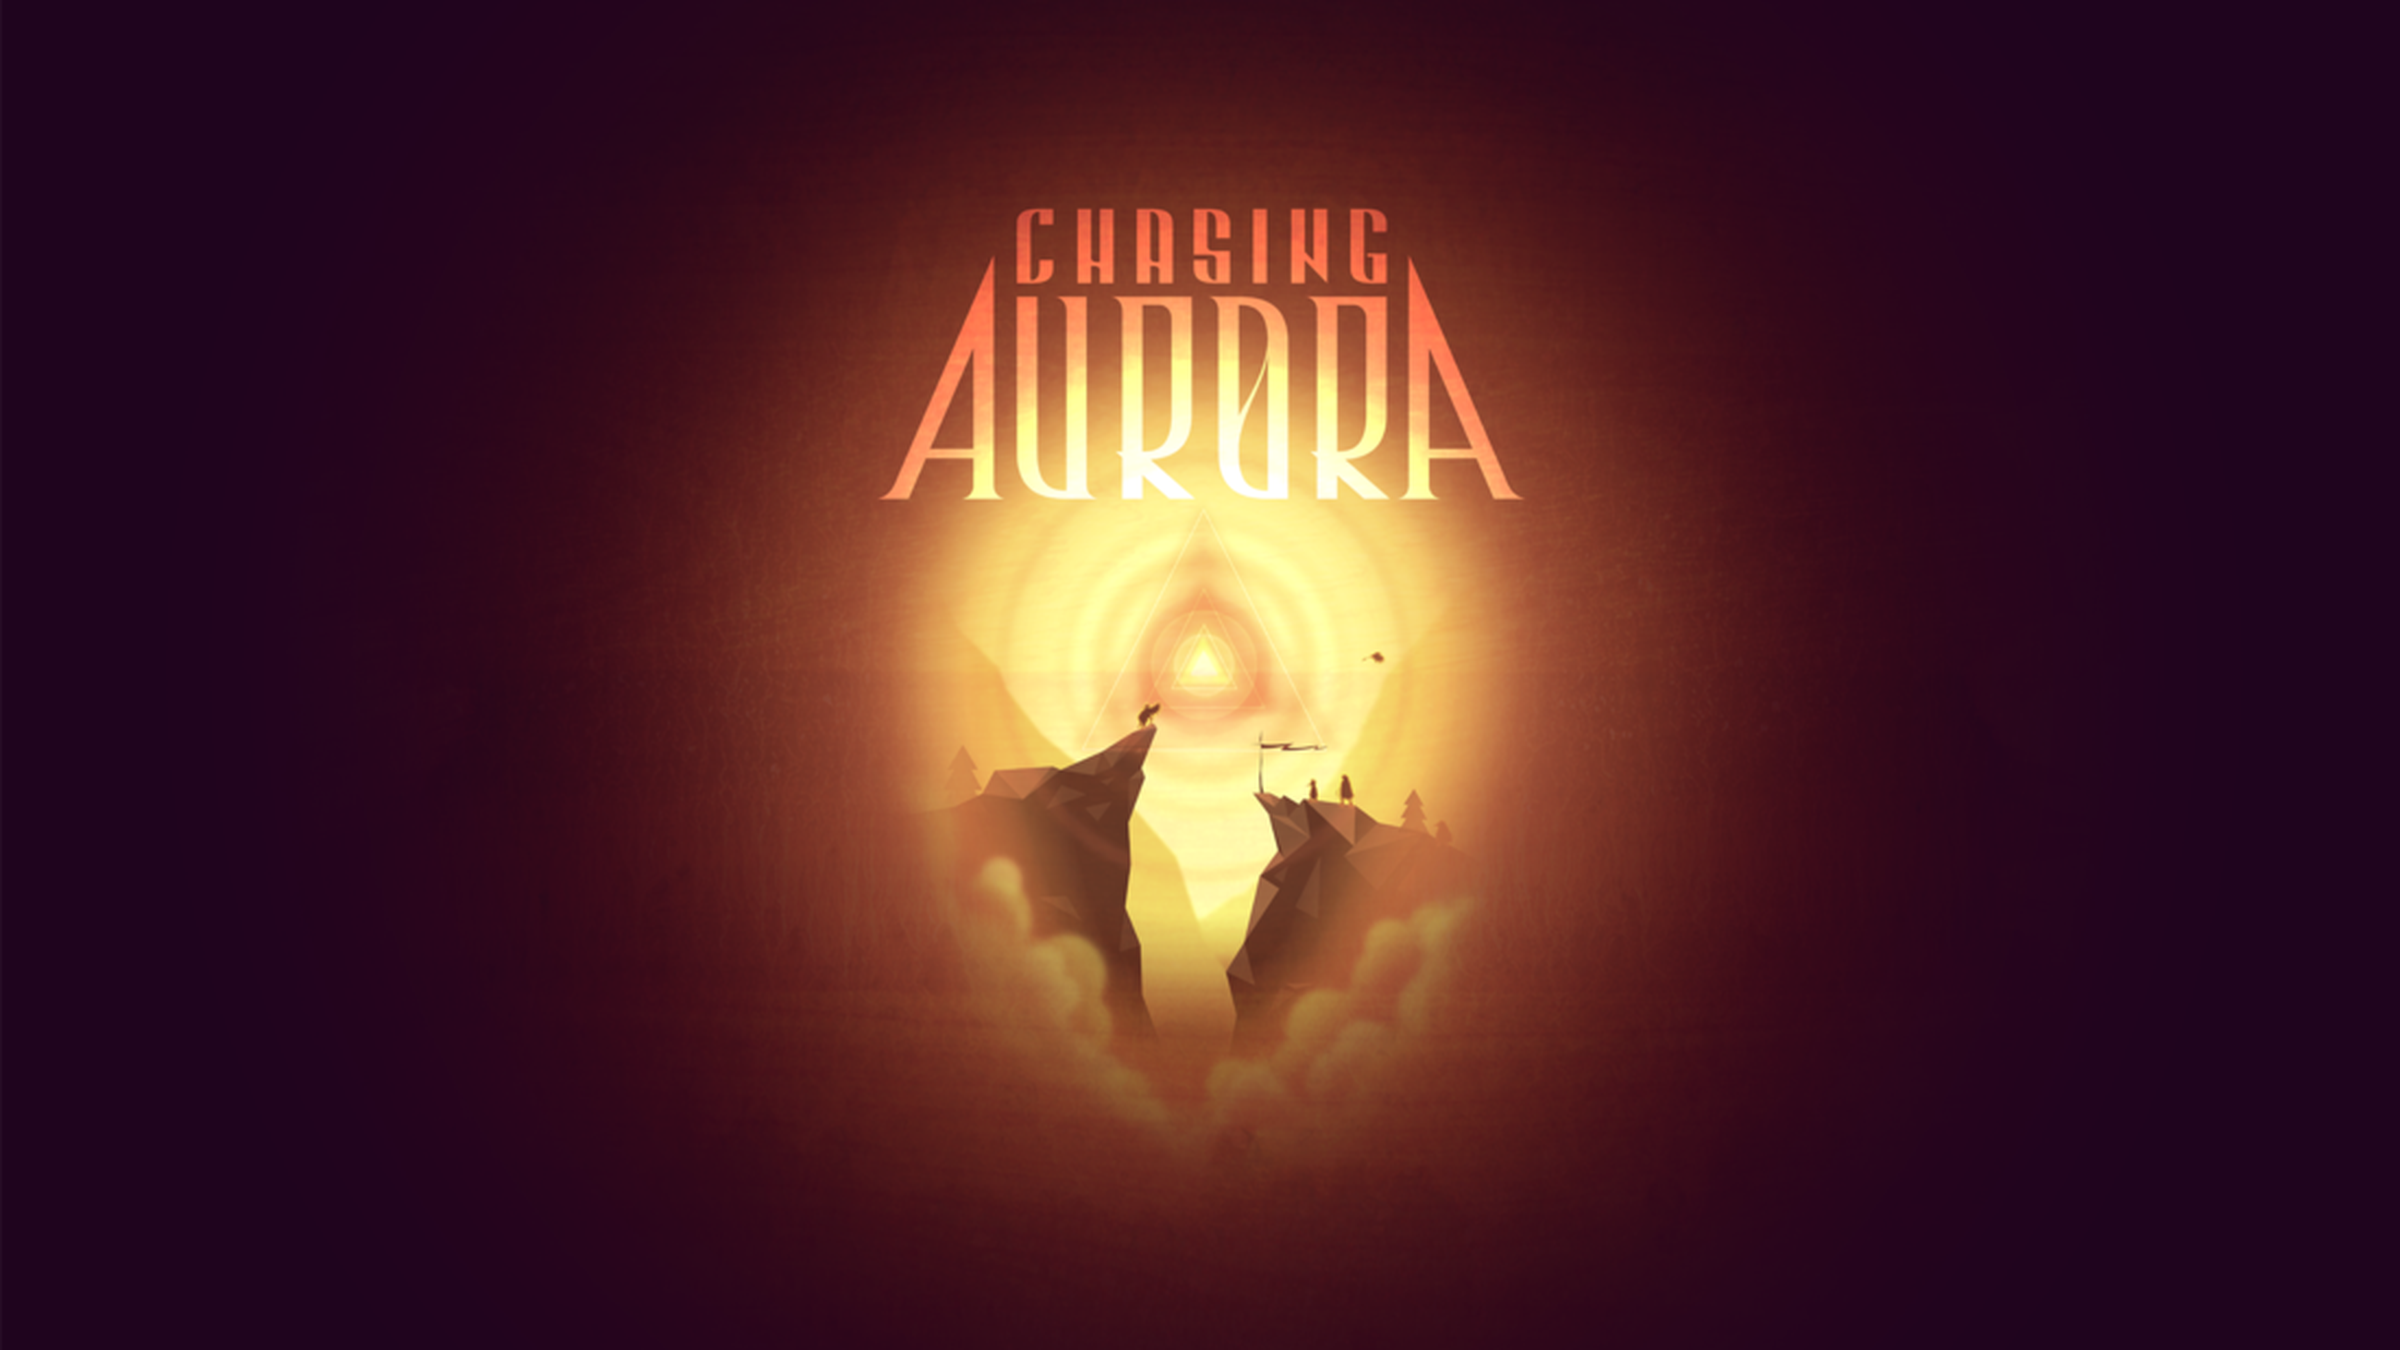 'Chasing Aurora' screenshots and art